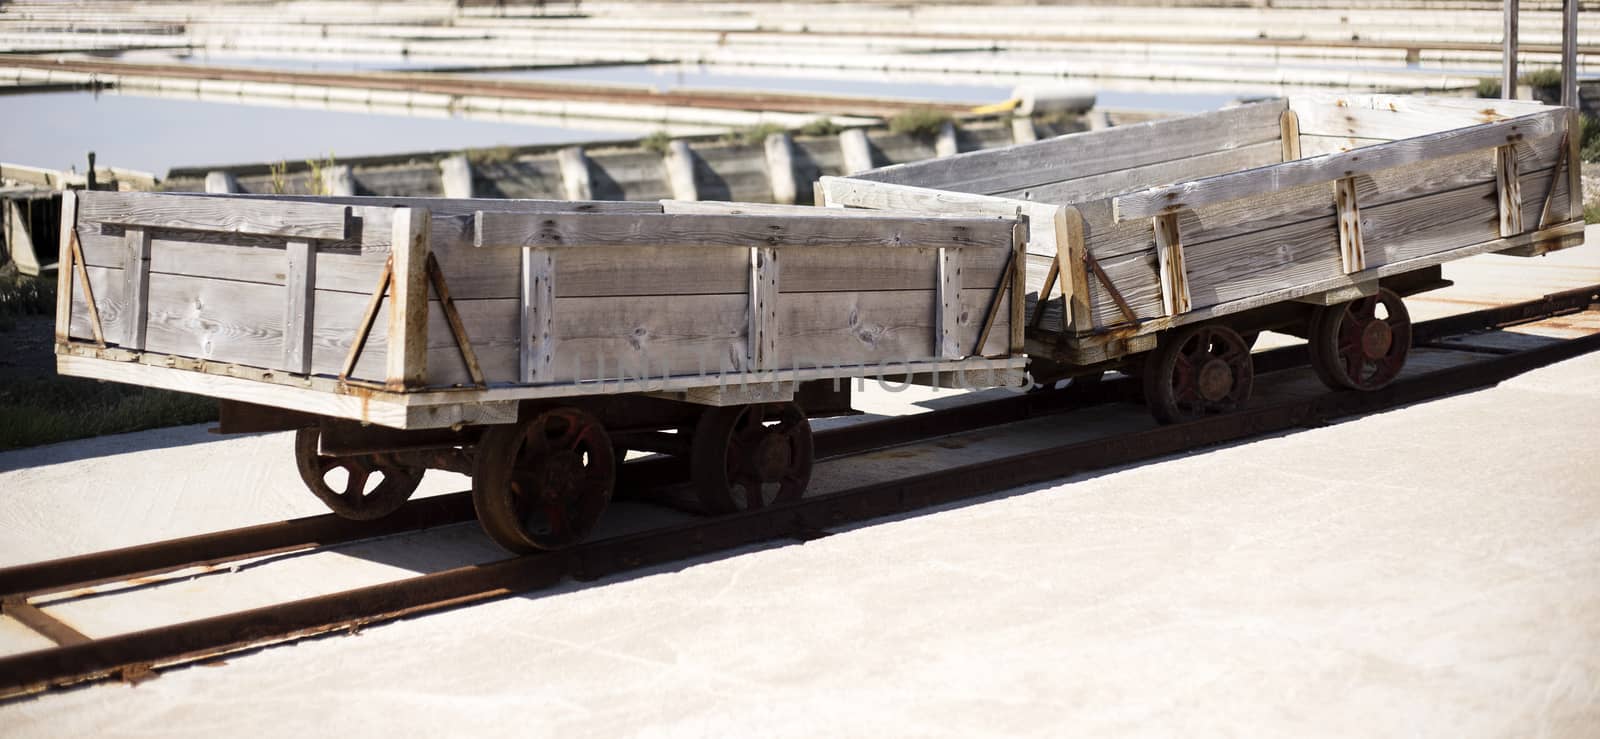 Salt carts on railroad waiting for transport of salt.